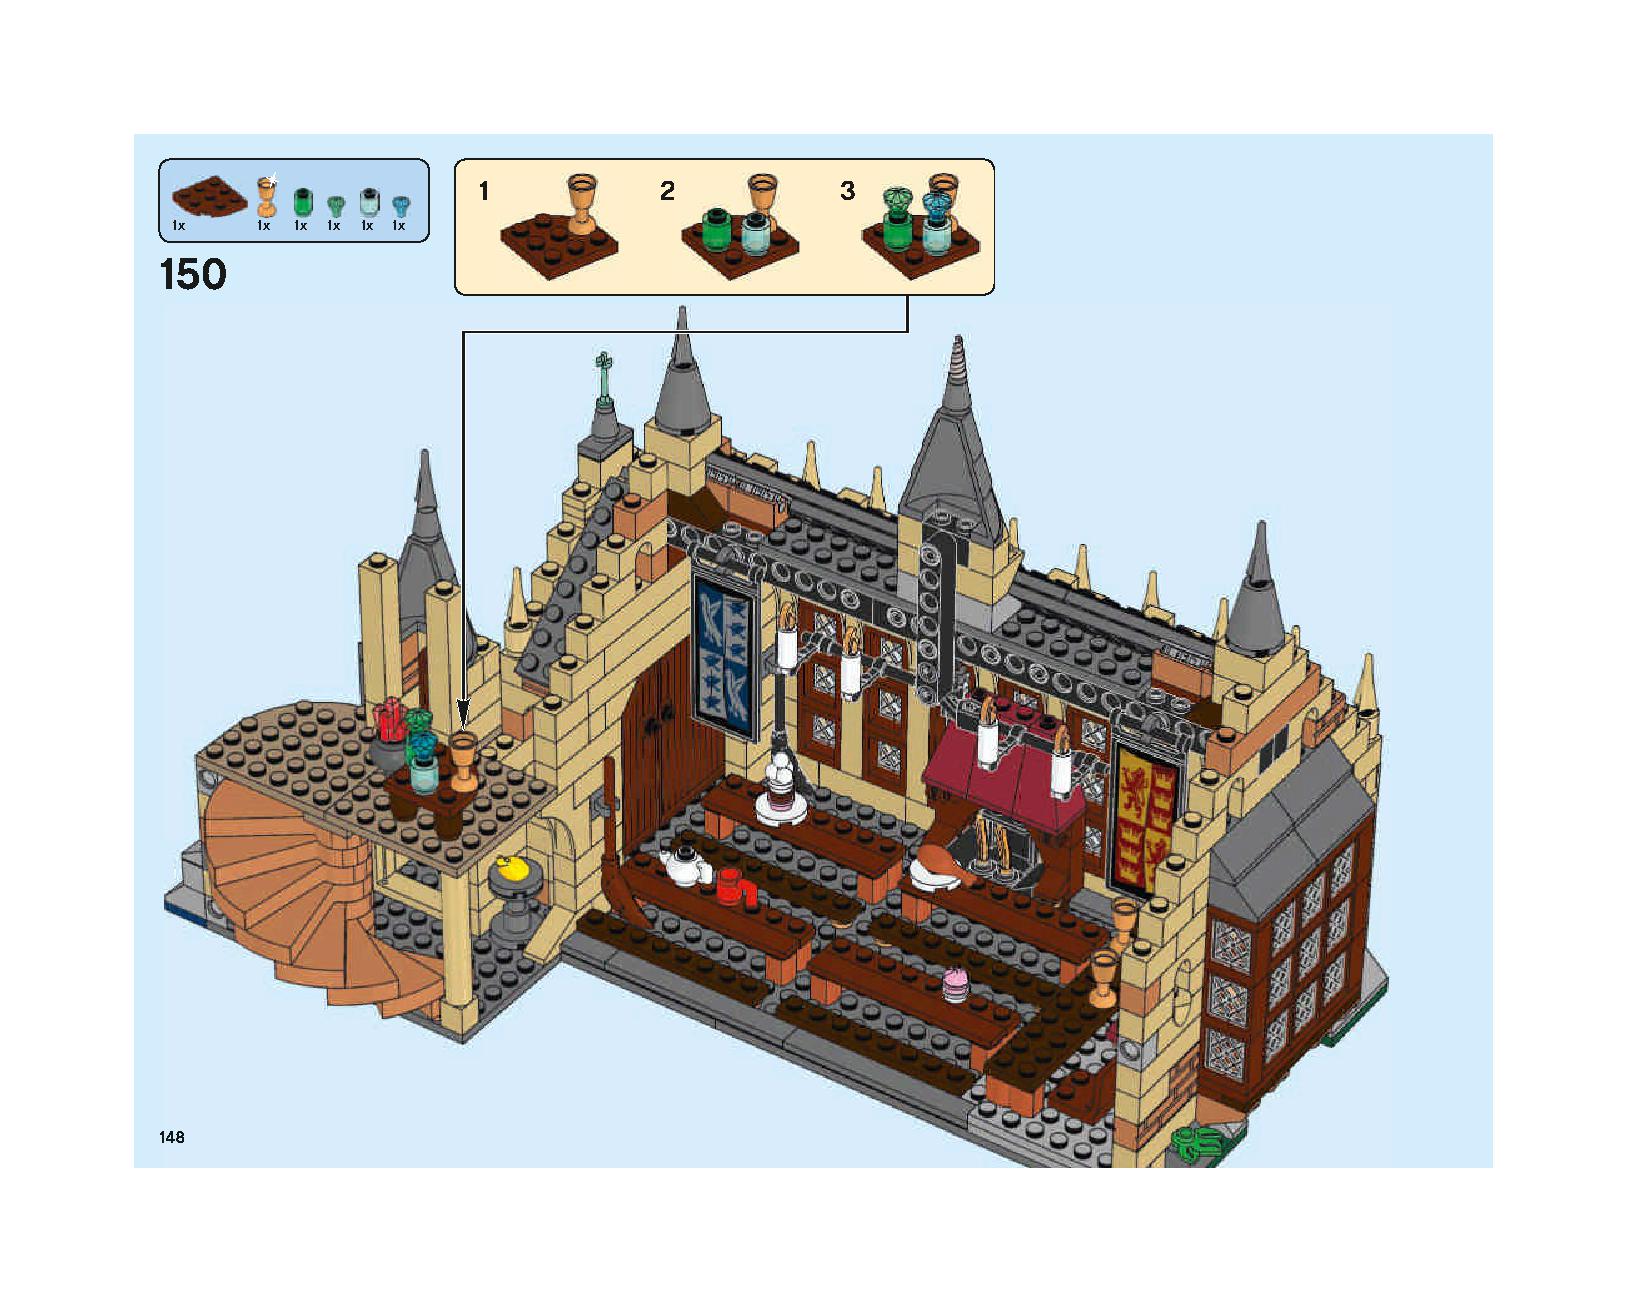 ホグワーツの大広間 75954 レゴの商品情報 レゴの説明書・組立方法 148 page